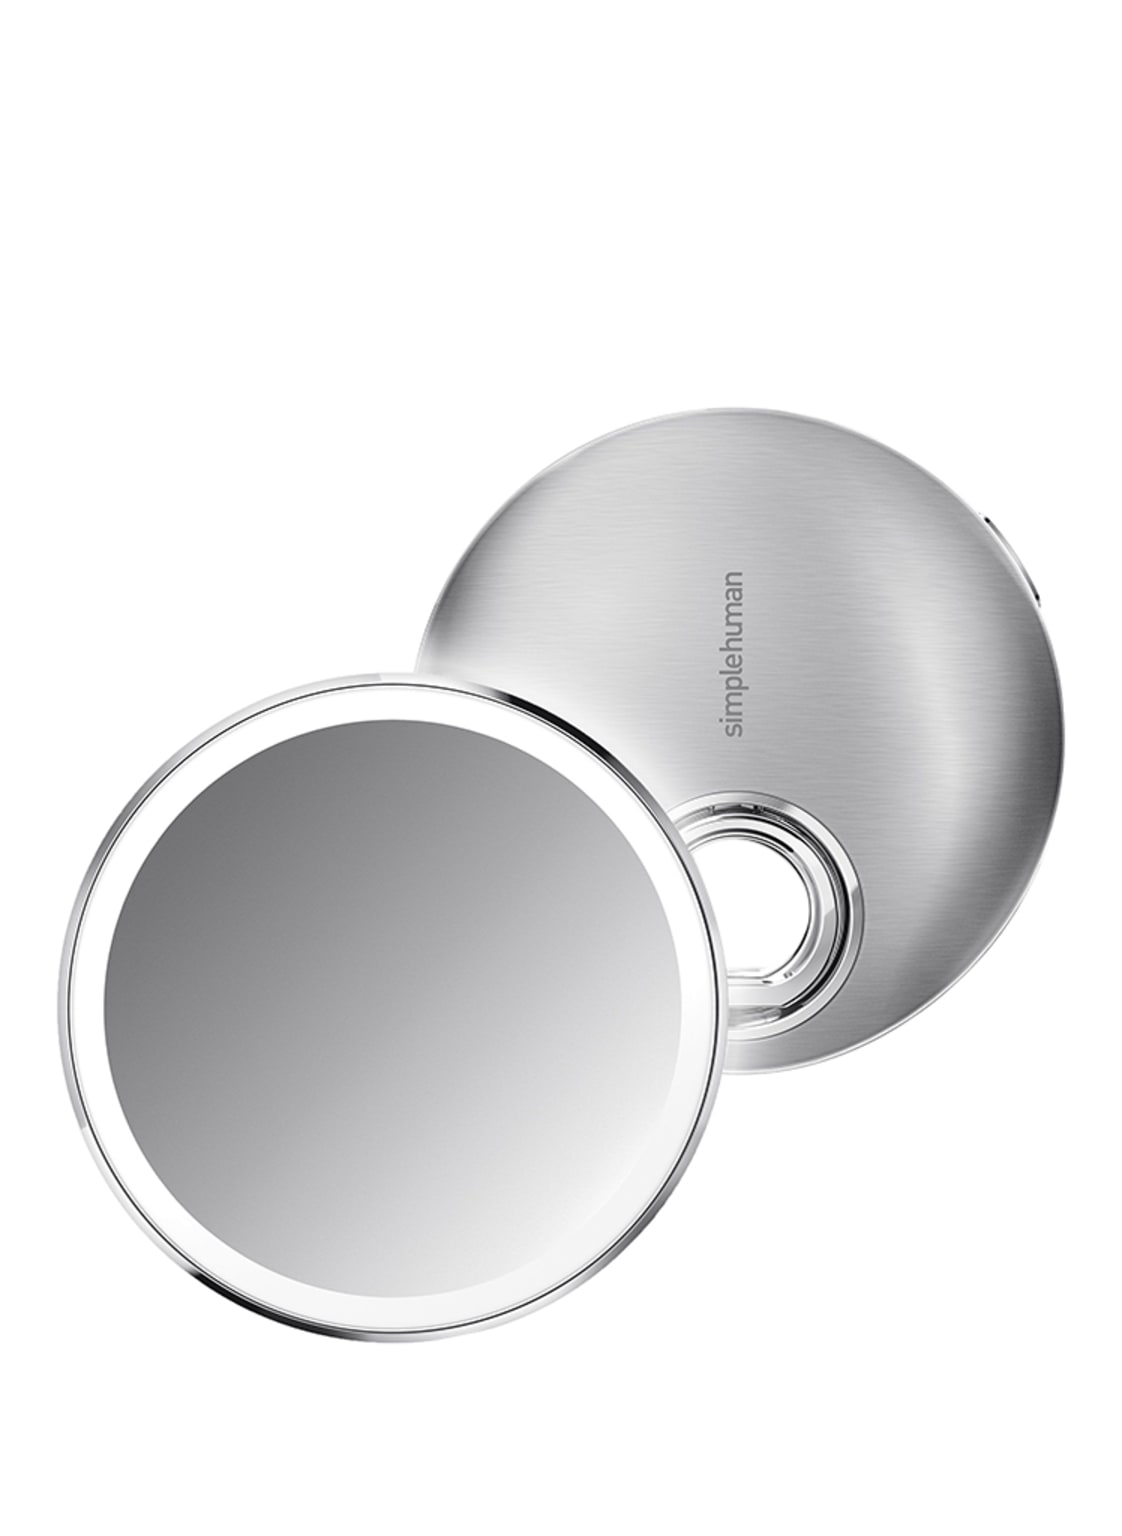 Image of Simplehuman Sensorspiegel Kompakt Kosmetikspiegel (10-fache Vergrößerung)